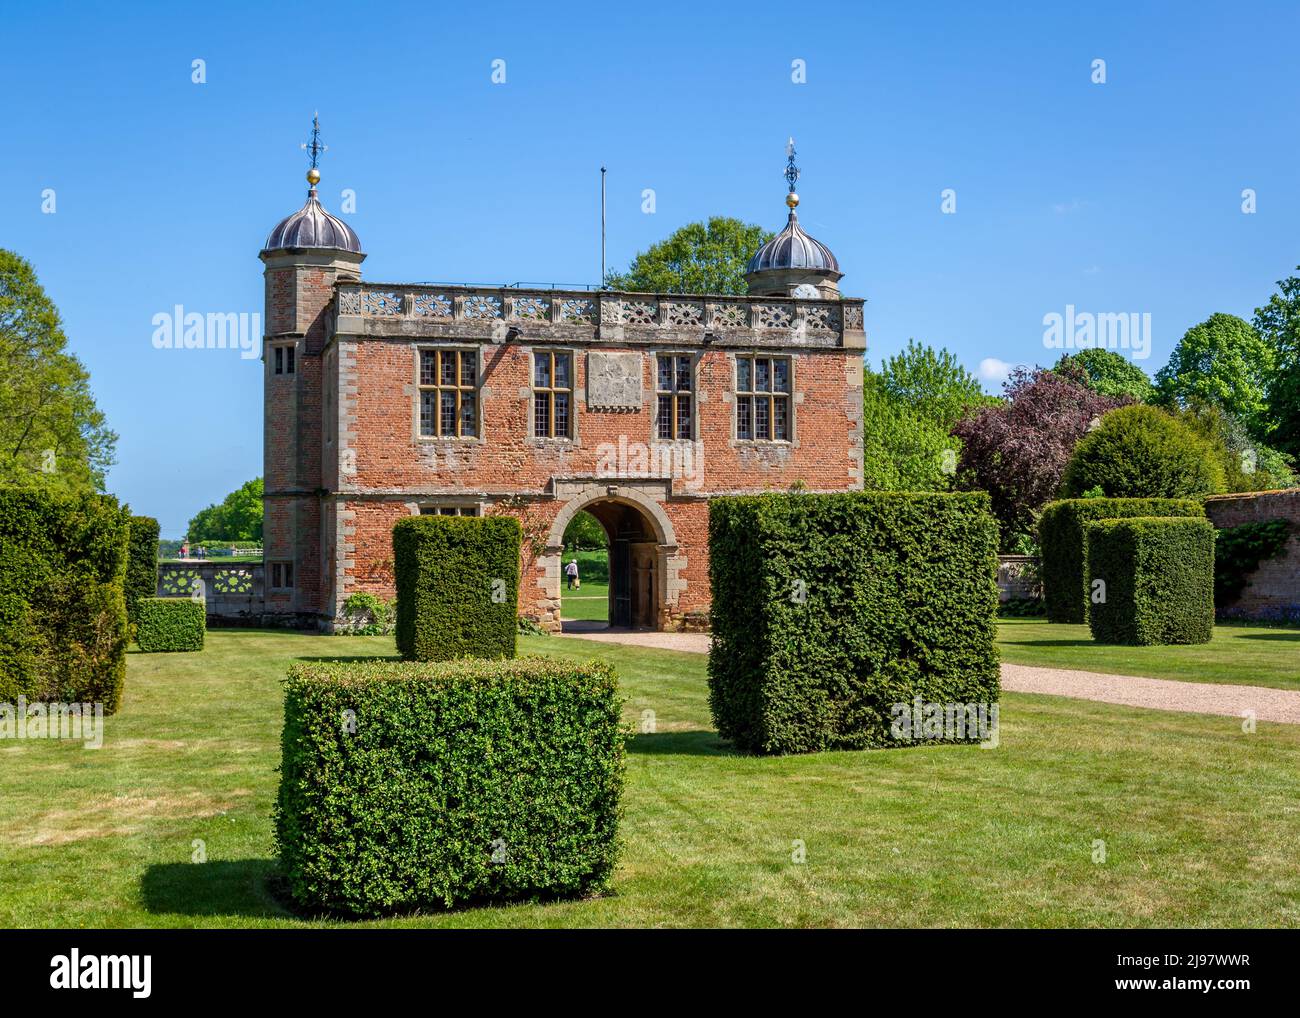 Wunderschönes Charlecote House & Gardens in Charlecote Park, Warwickshire. Stockfoto